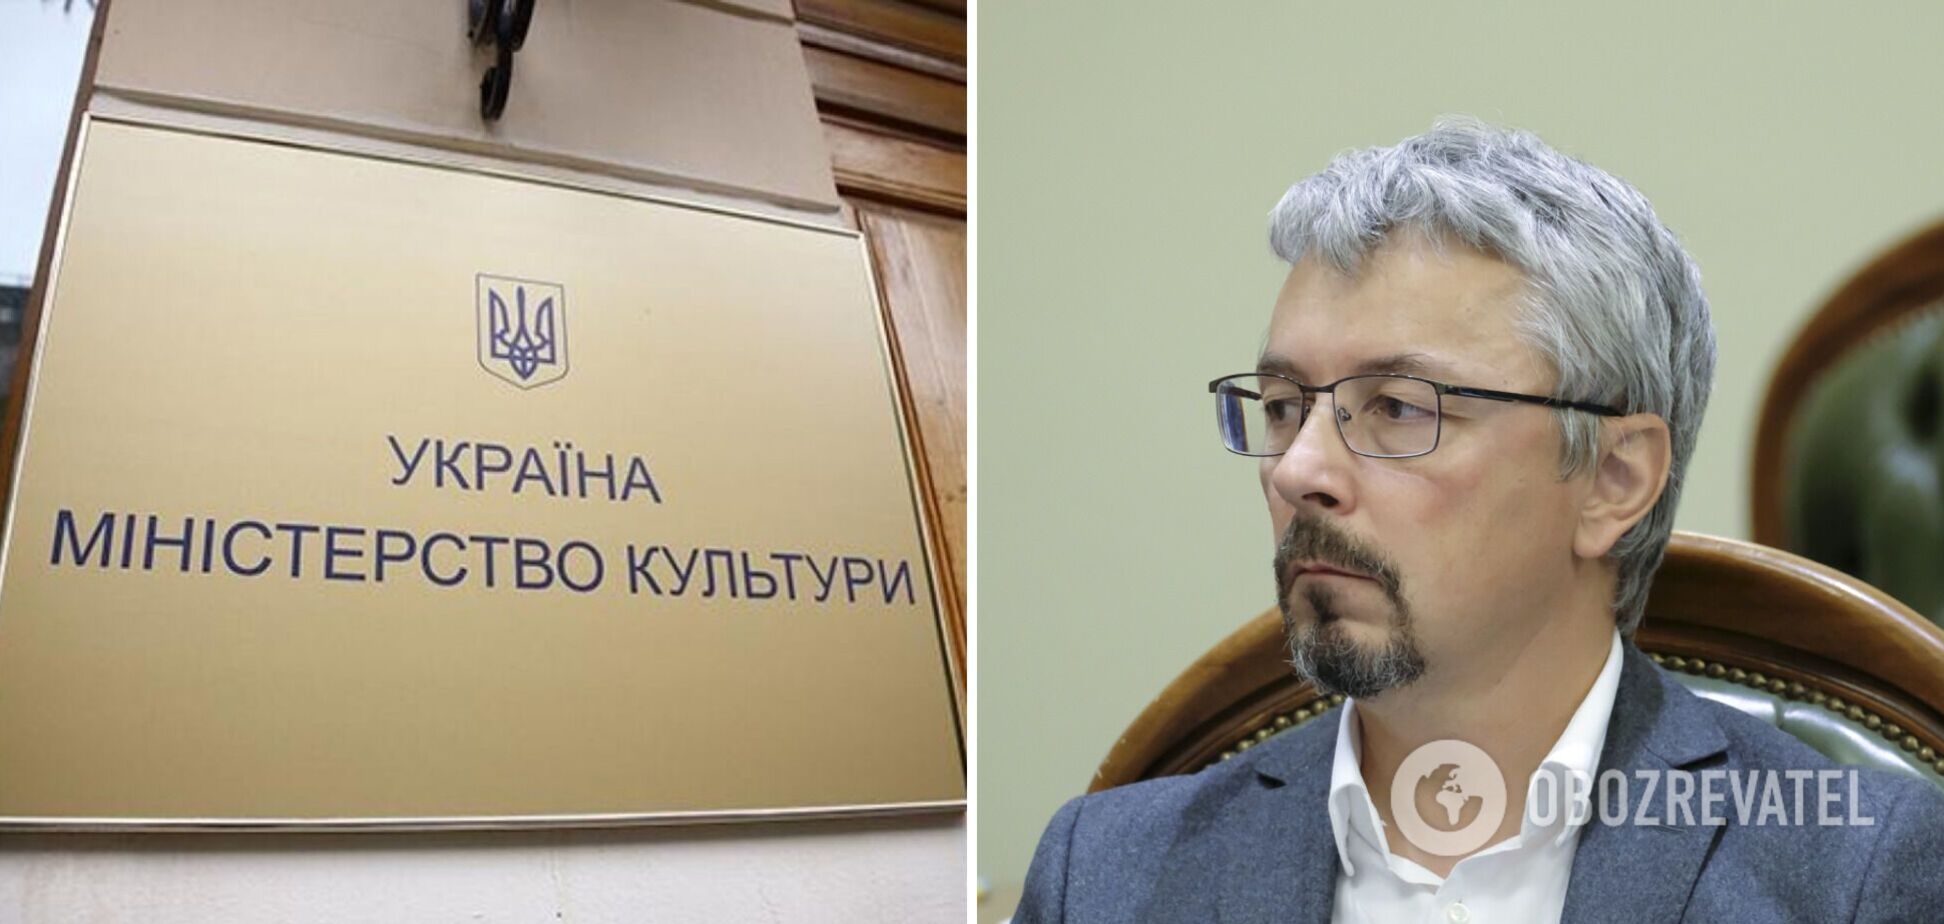 Ткаченко подає у відставку з посади міністра культури, – ЗМІ